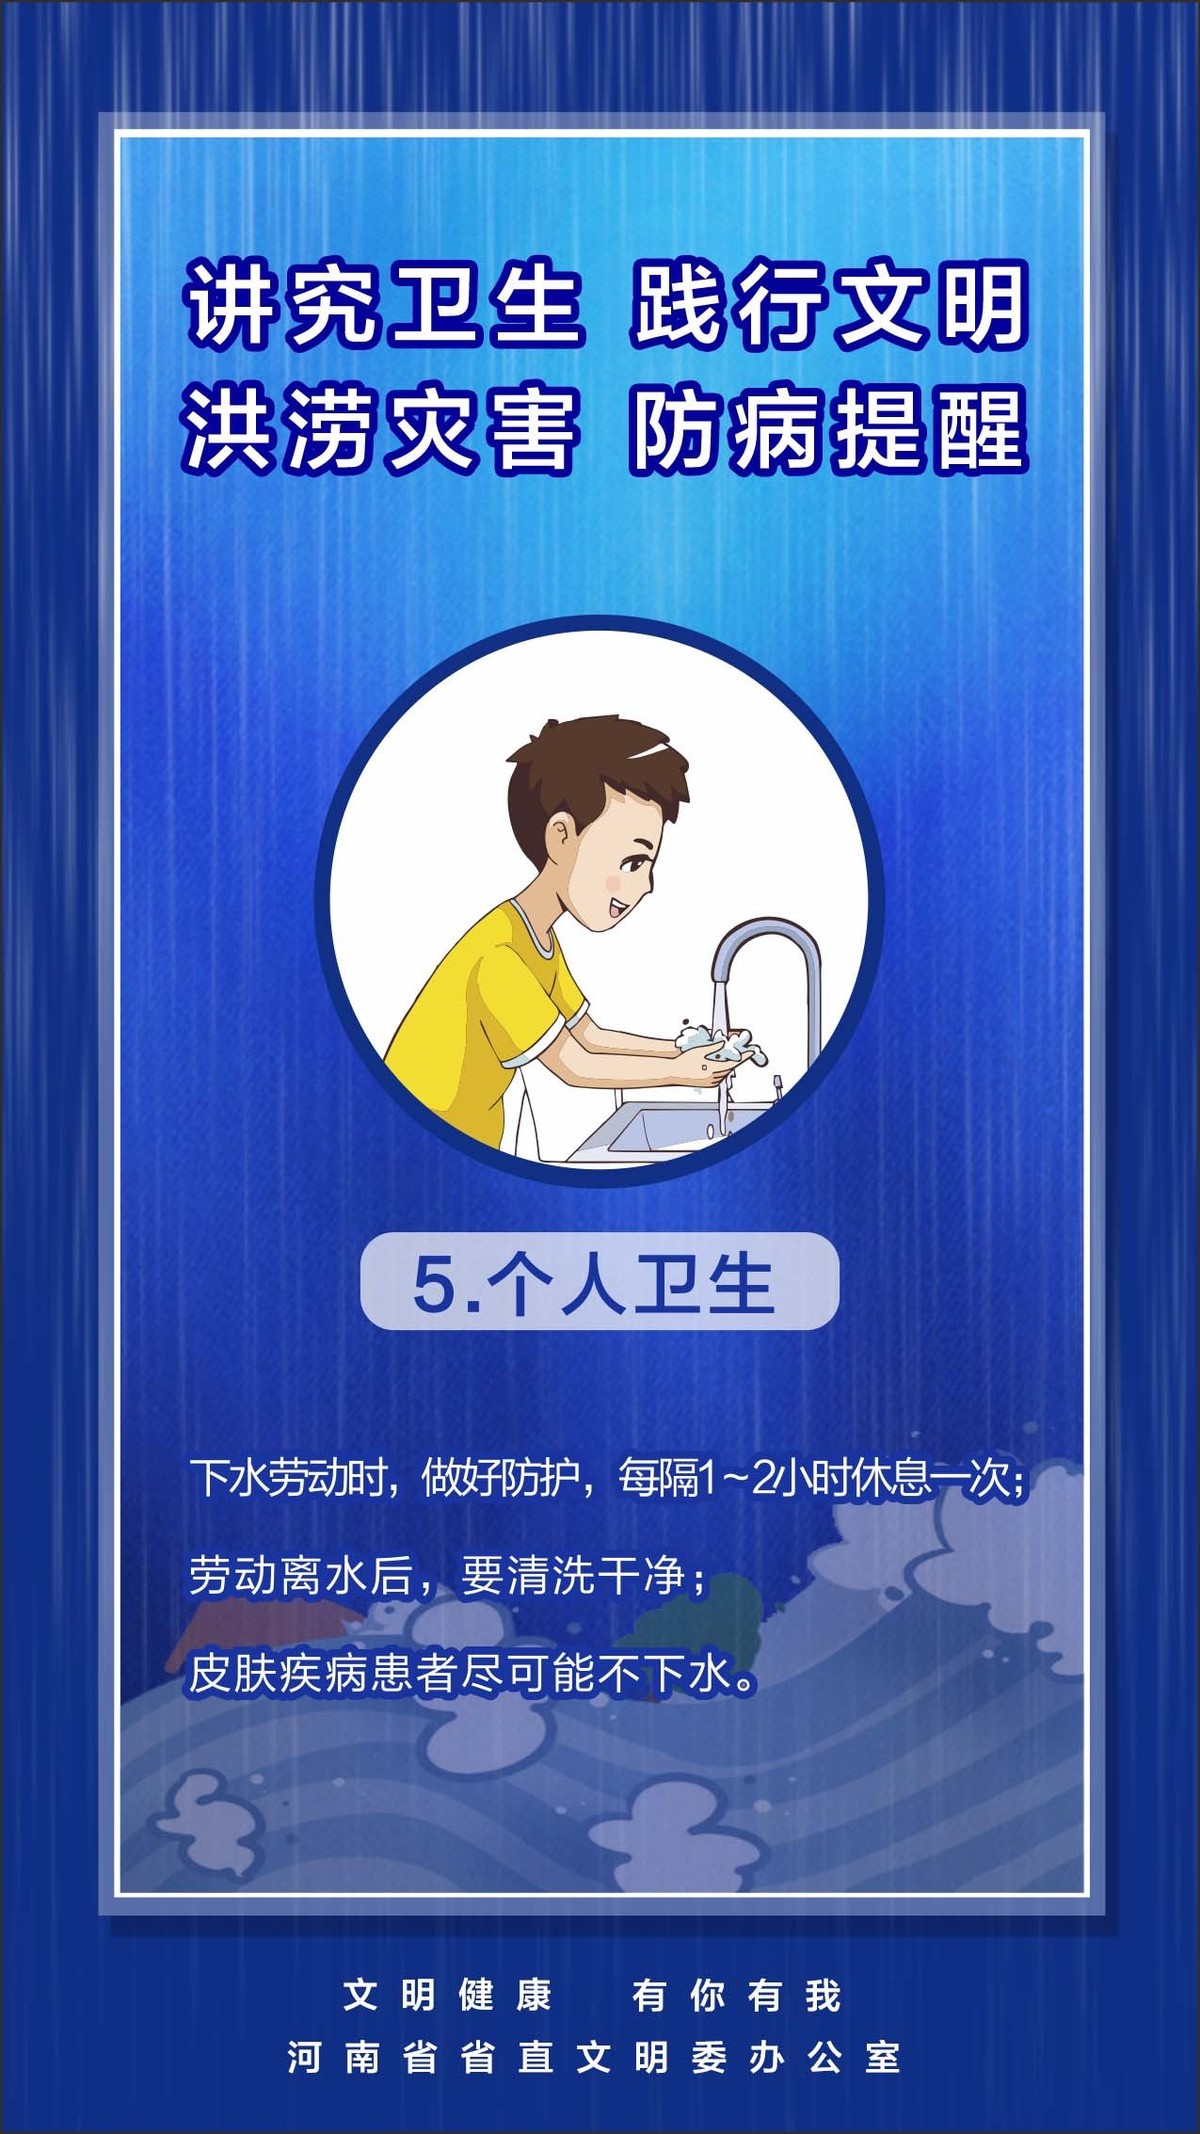 河南省省直文明办《防汛救灾 文明健康》系列宣传海报